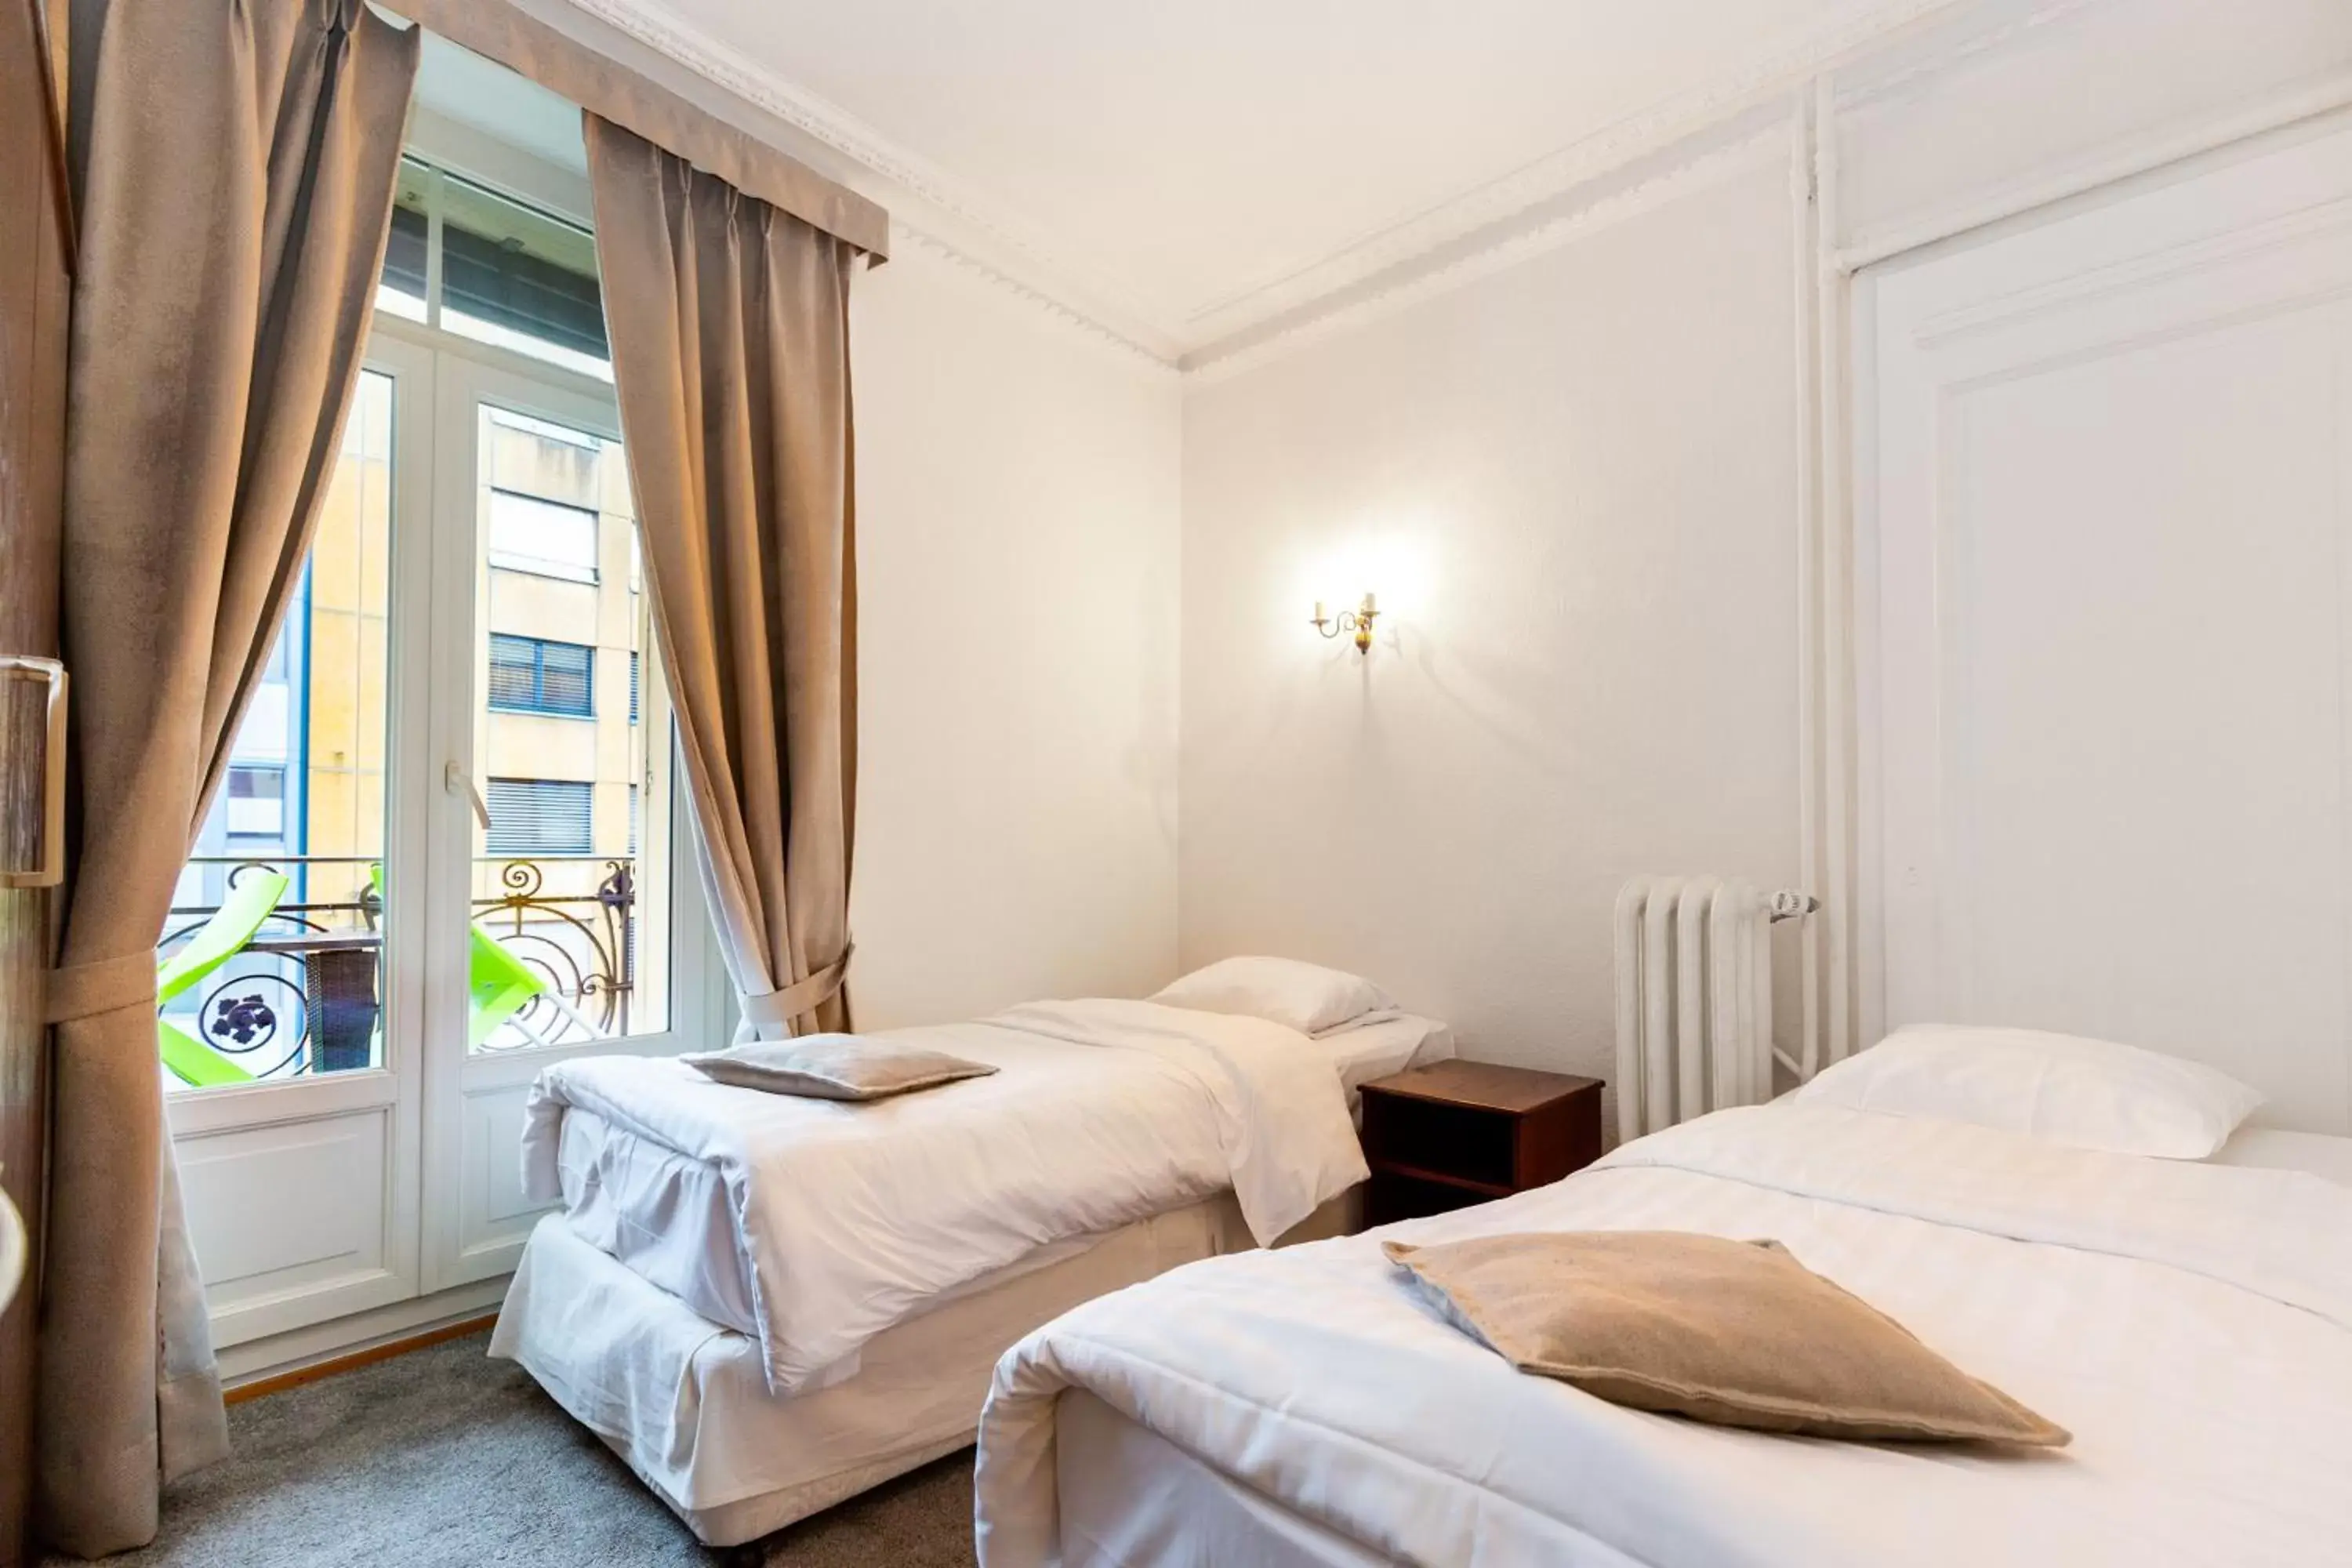 Bed in J5 Hotels Helvetie & La Brasserie